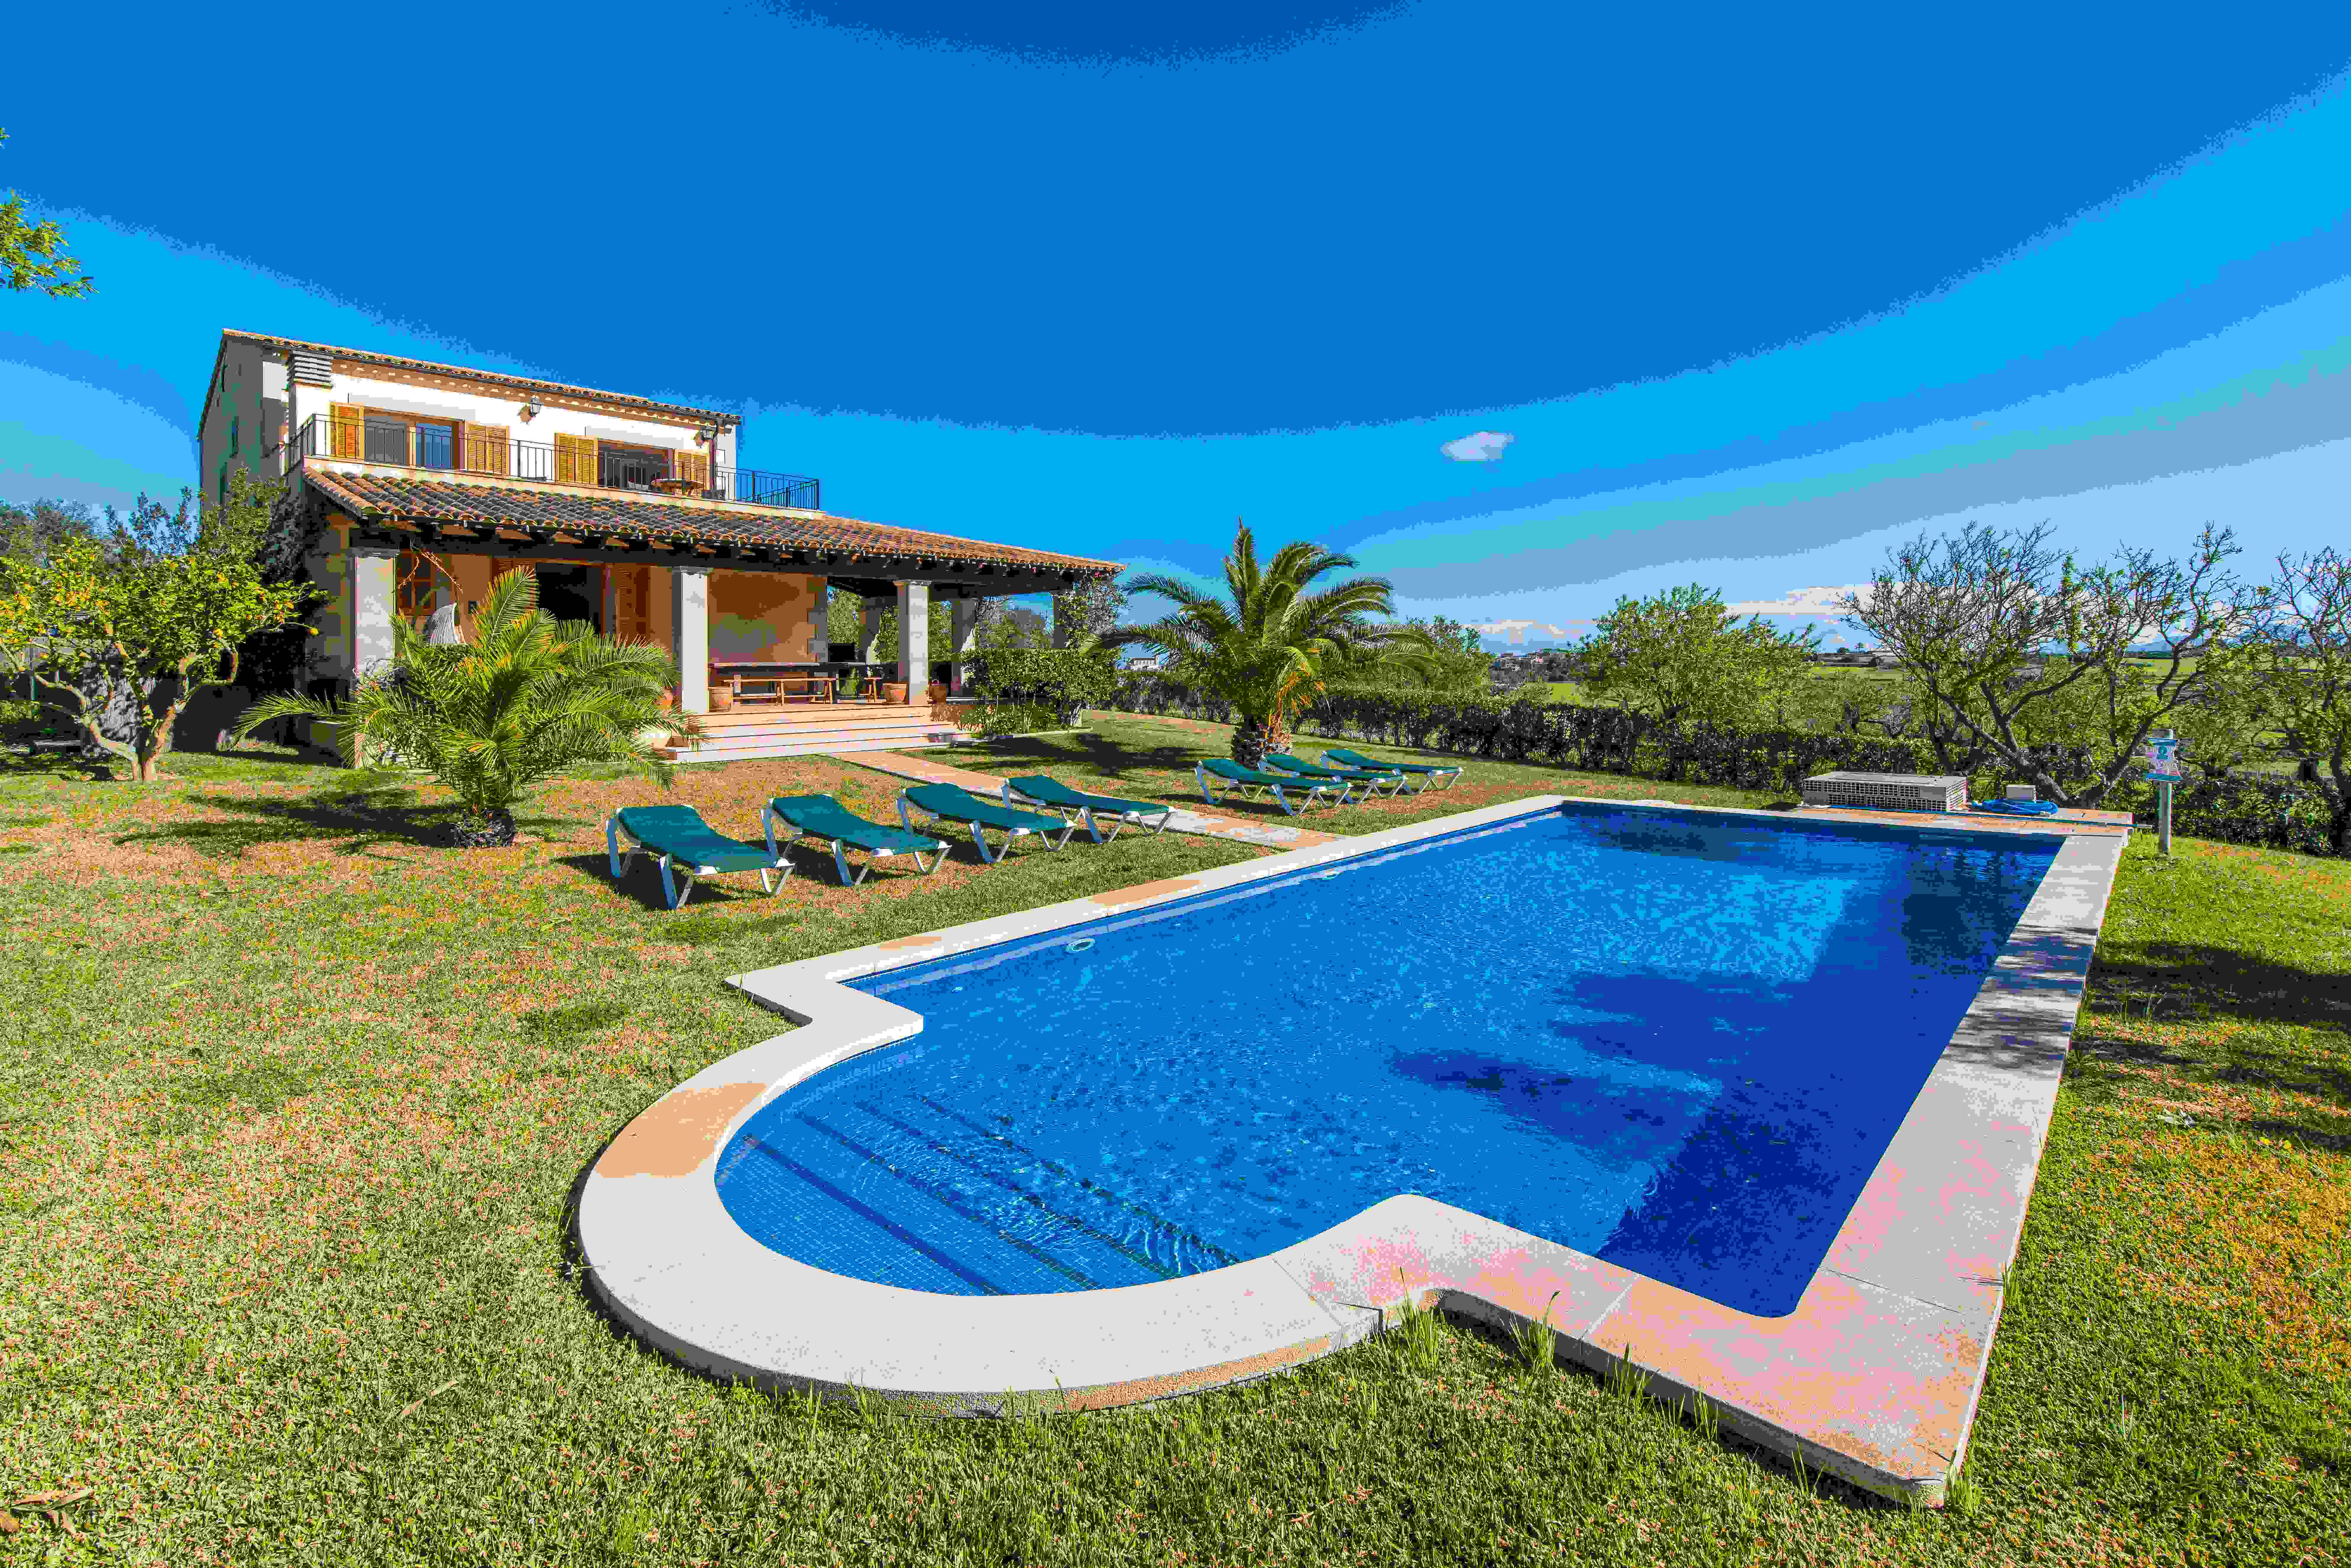 Villa with pool and vacation license in María de la Salud.